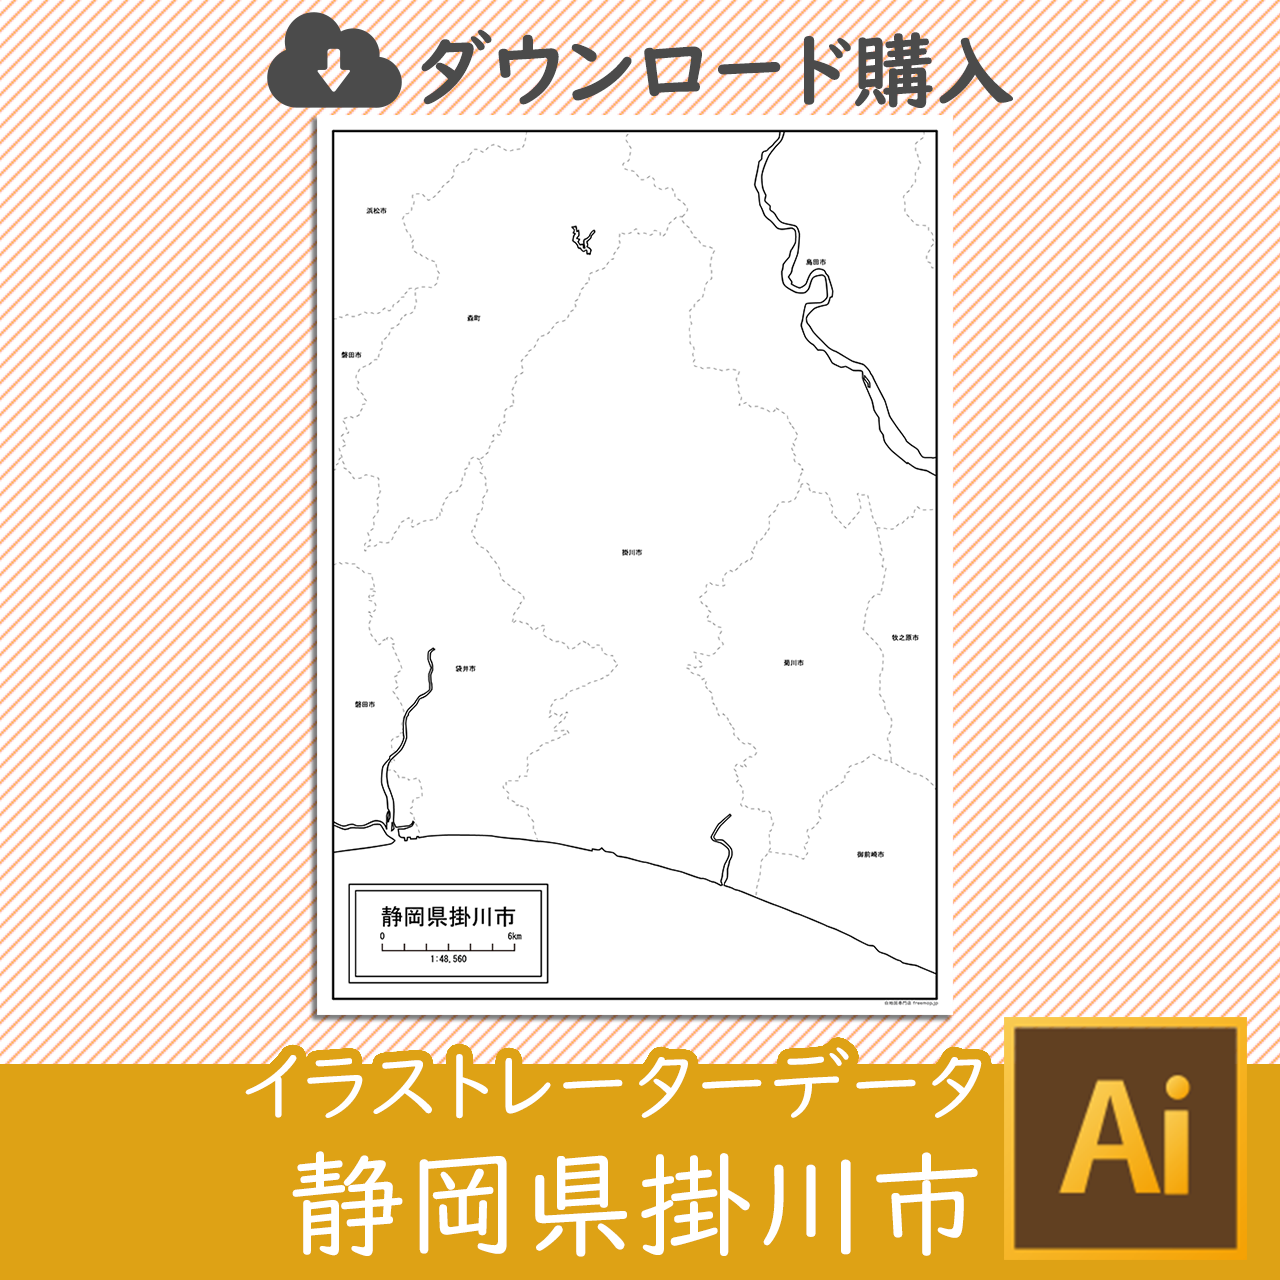 掛川市のaiデータのサムネイル画像